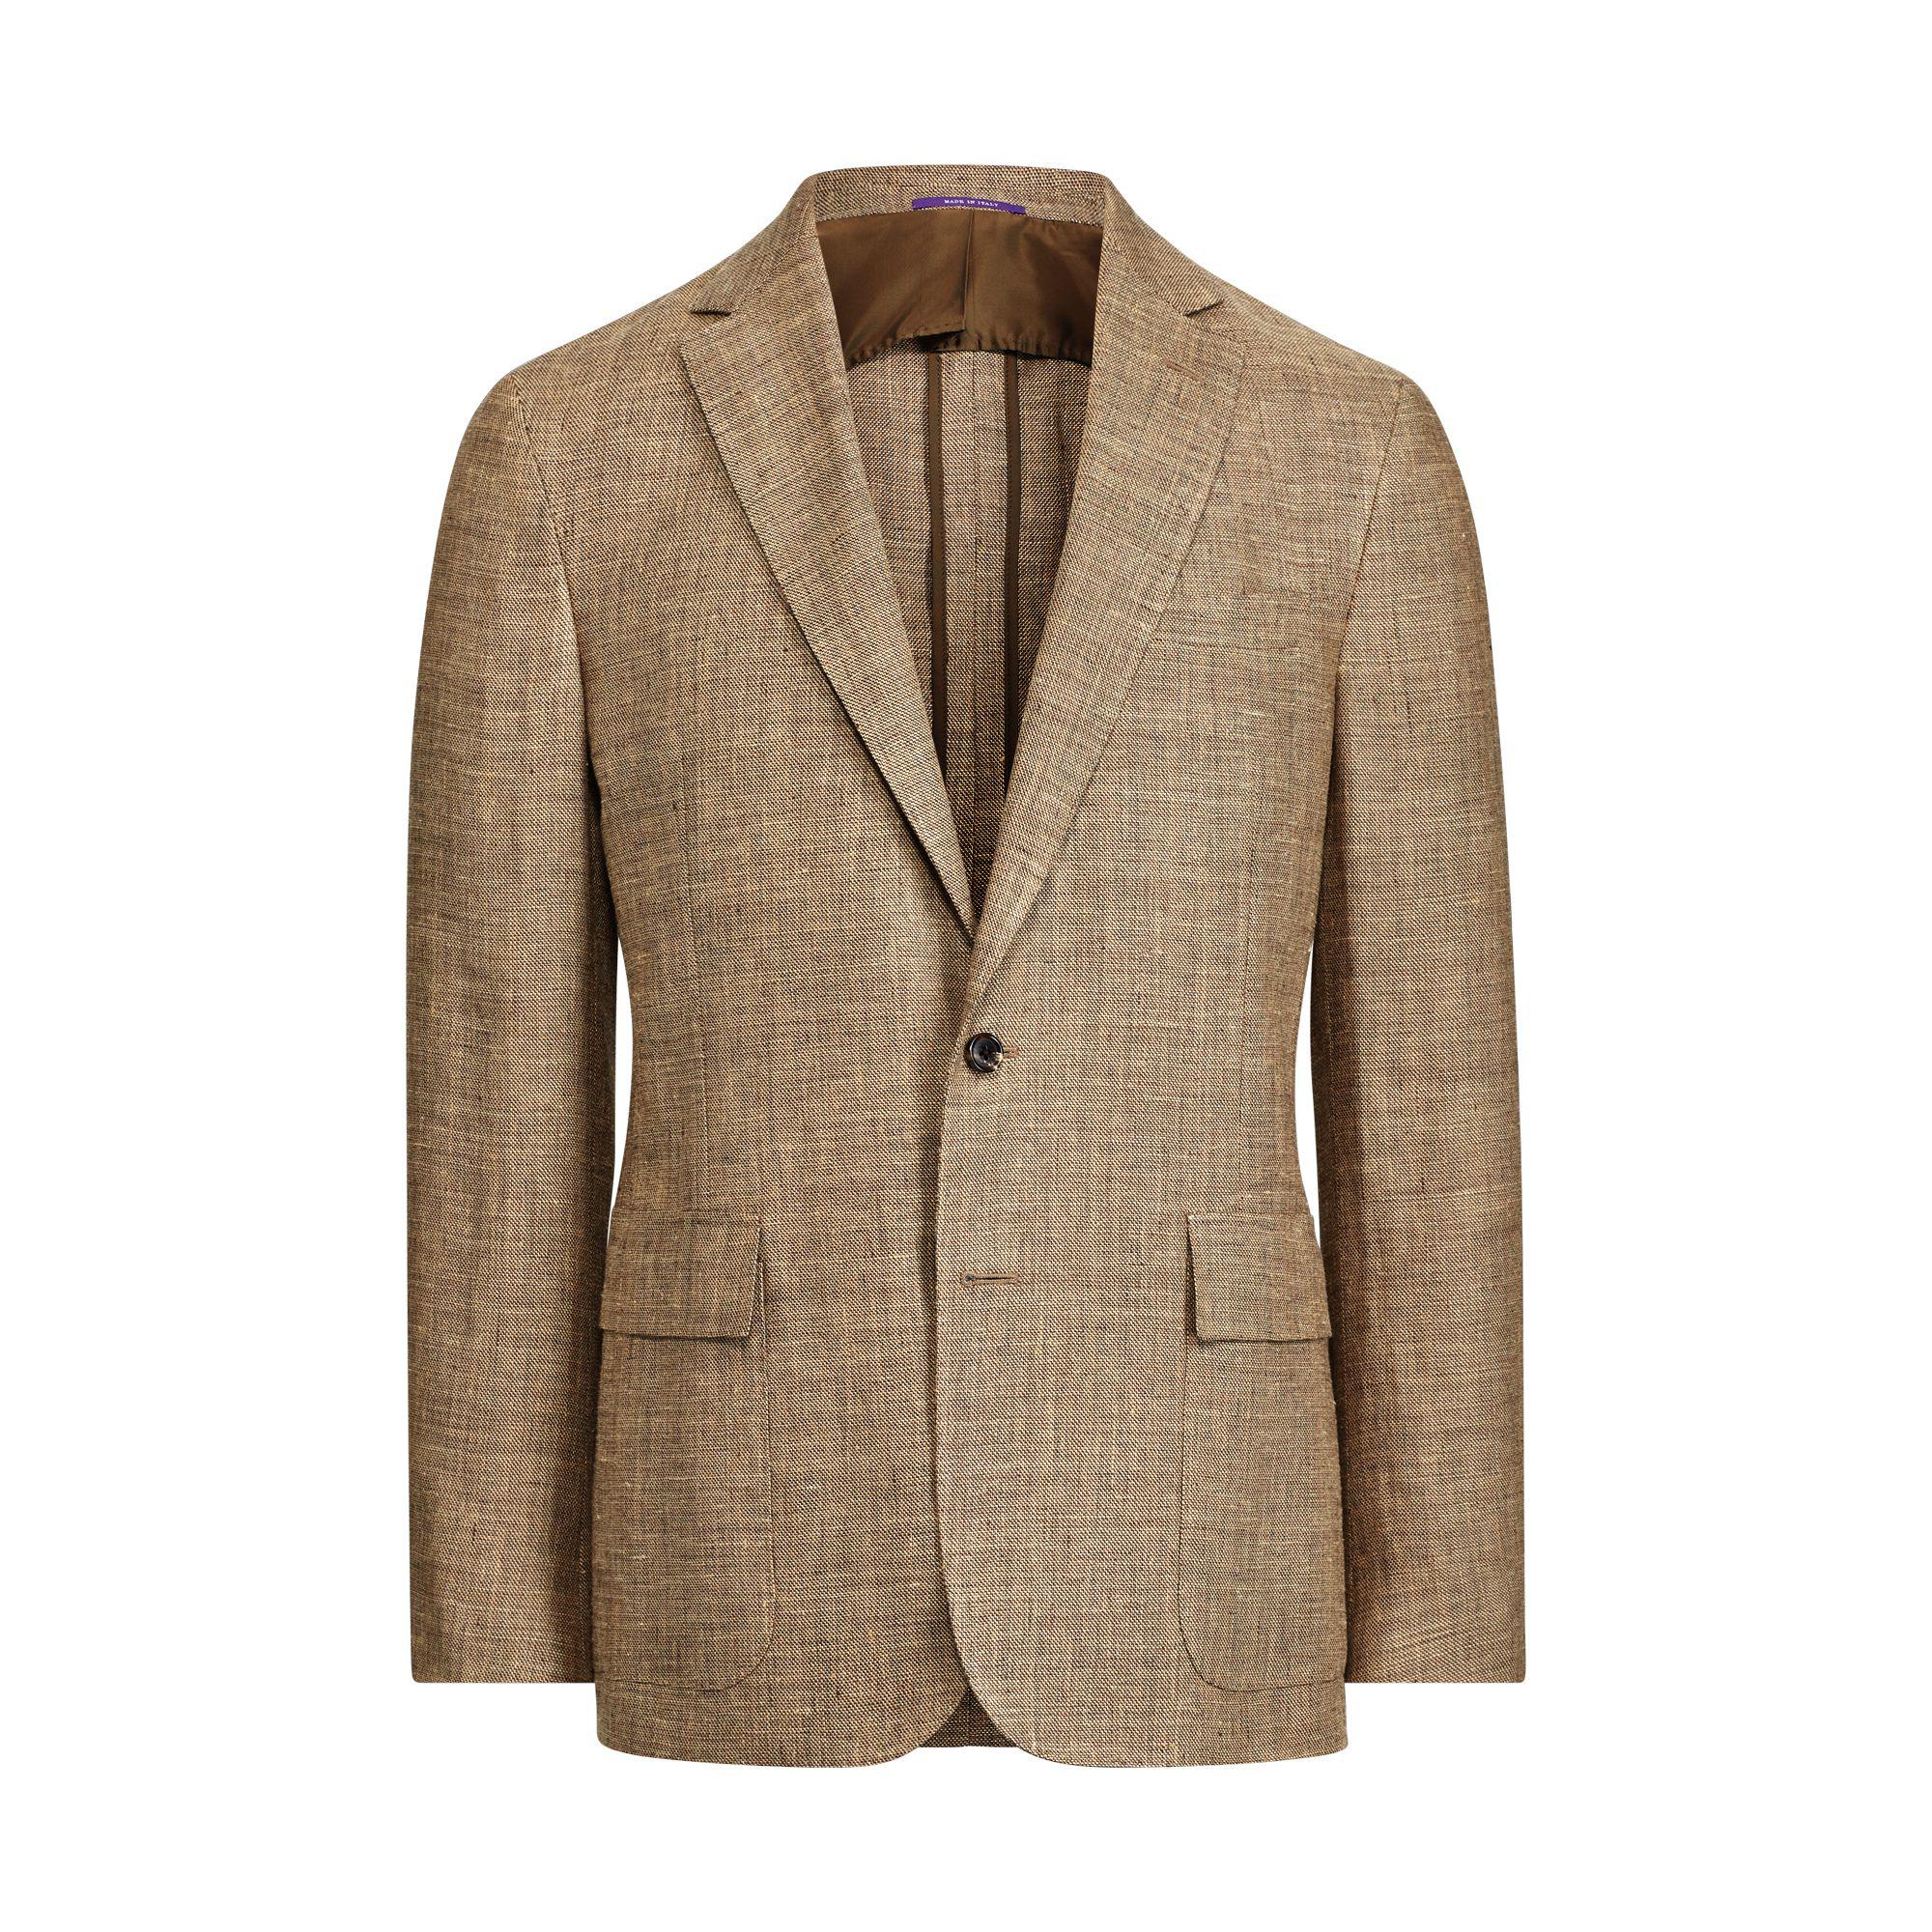 Lyst - Ralph Lauren Purple Label Linen-blend Tweed Suit Jacket in Brown ...